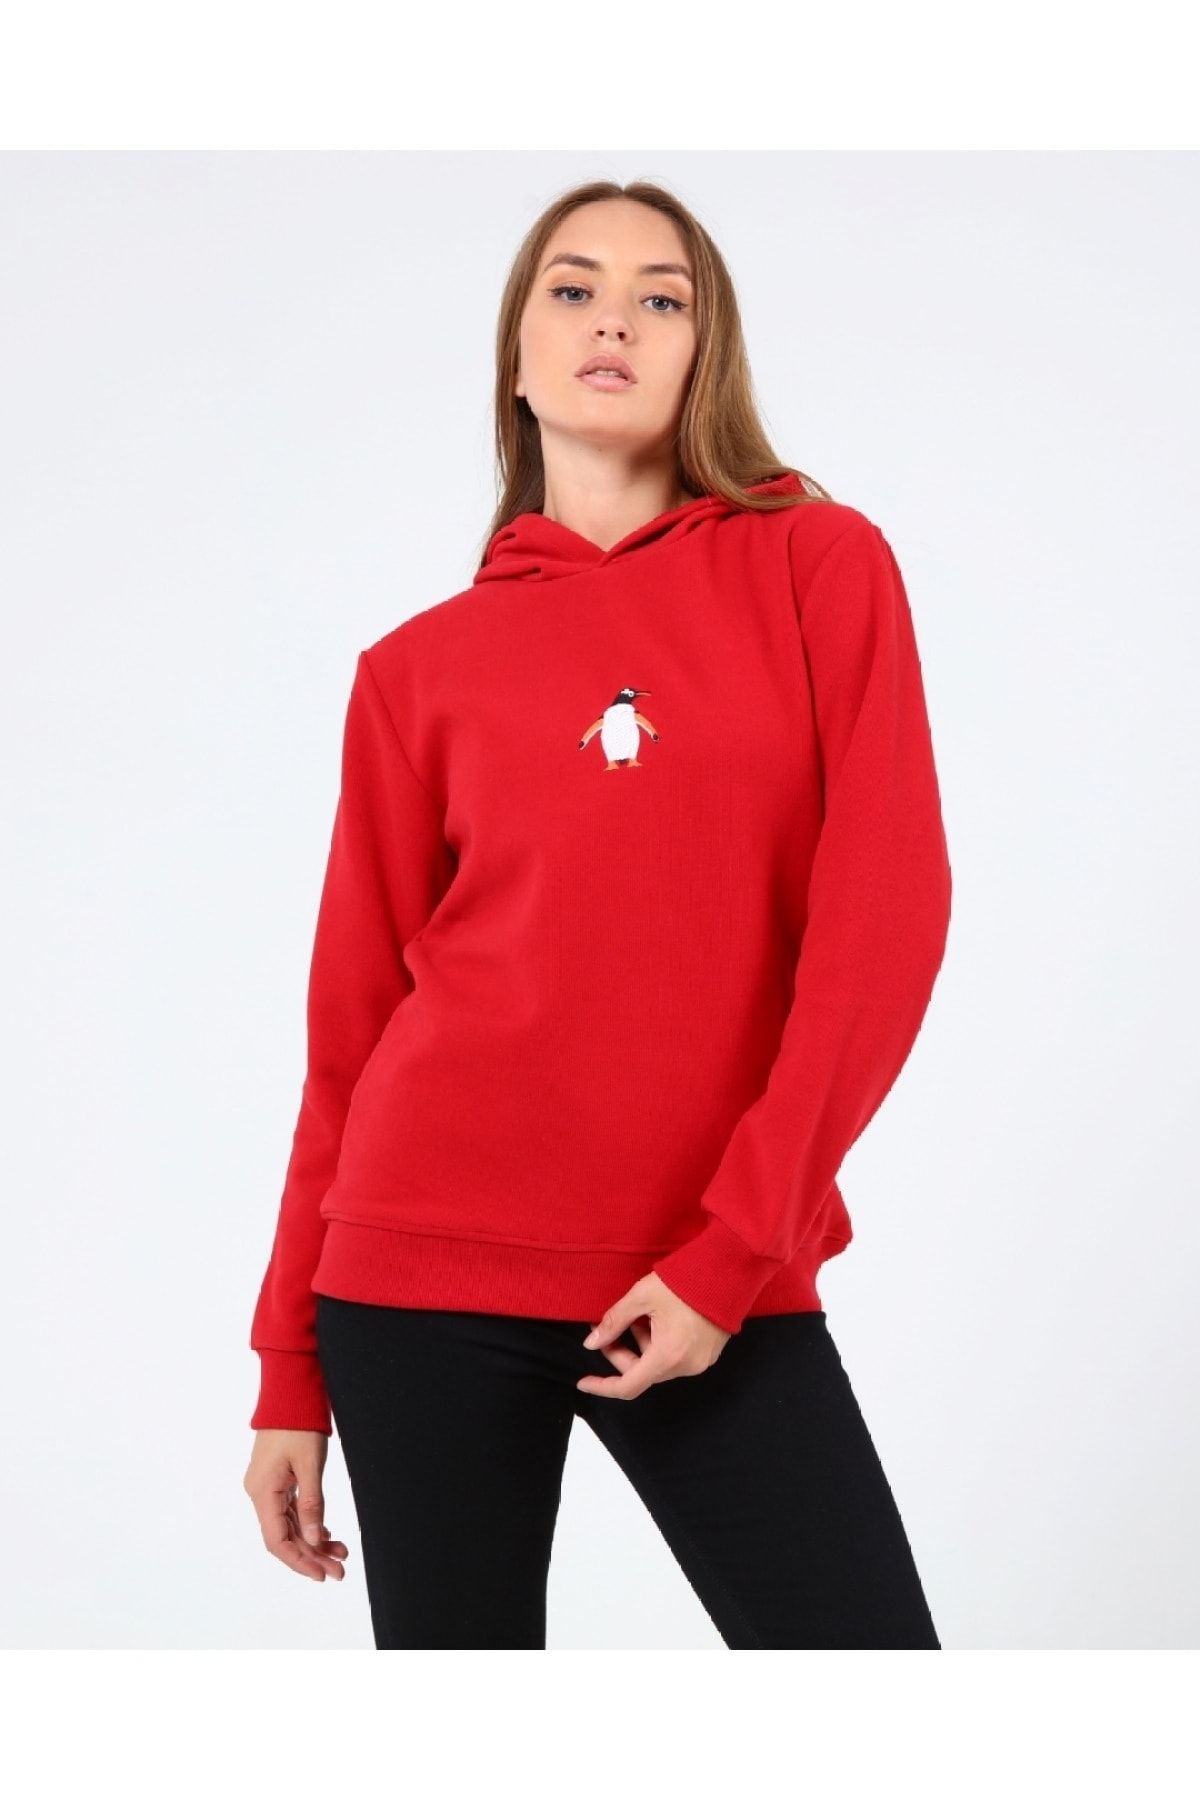 GENIUS STORE Store Kadın Selanik Outdoor Kapşonlu Sweatshirt Nakış Işlemeli Günlük Spor Sweatshirt